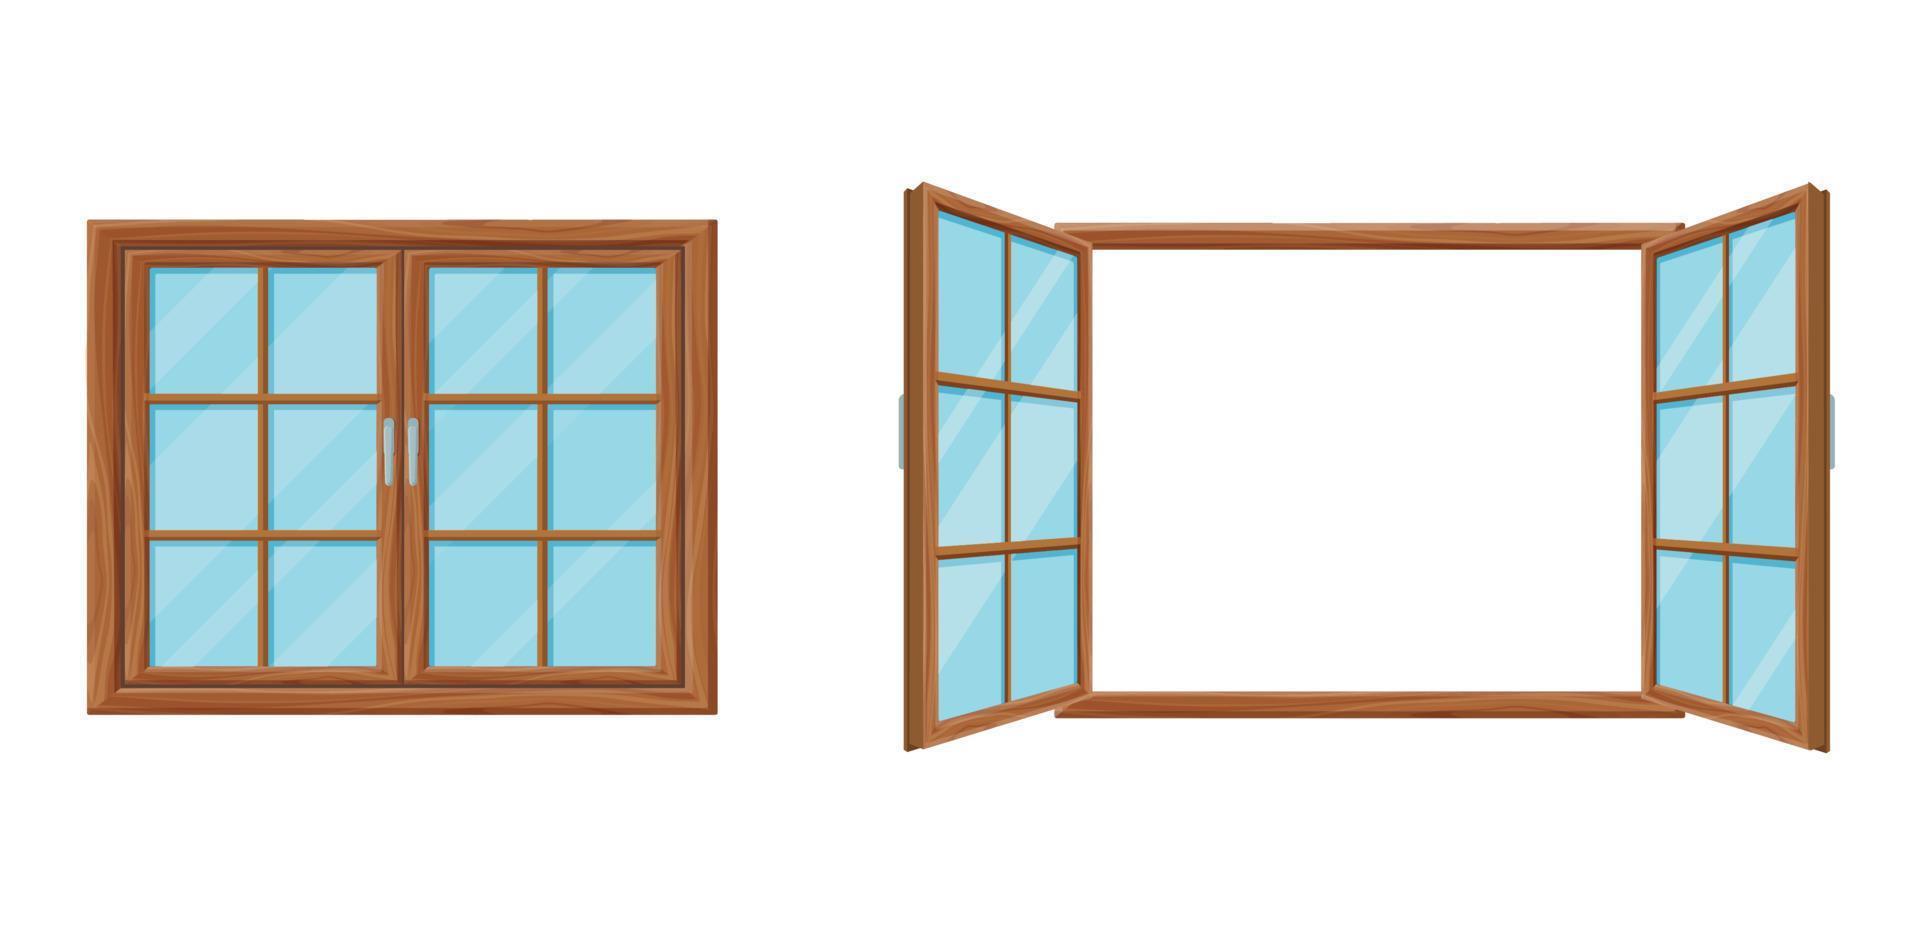 modèle de fenêtre en bois fermé et ouvert. fenêtre en maille de bois moderne deux portes pliantes. vecteur